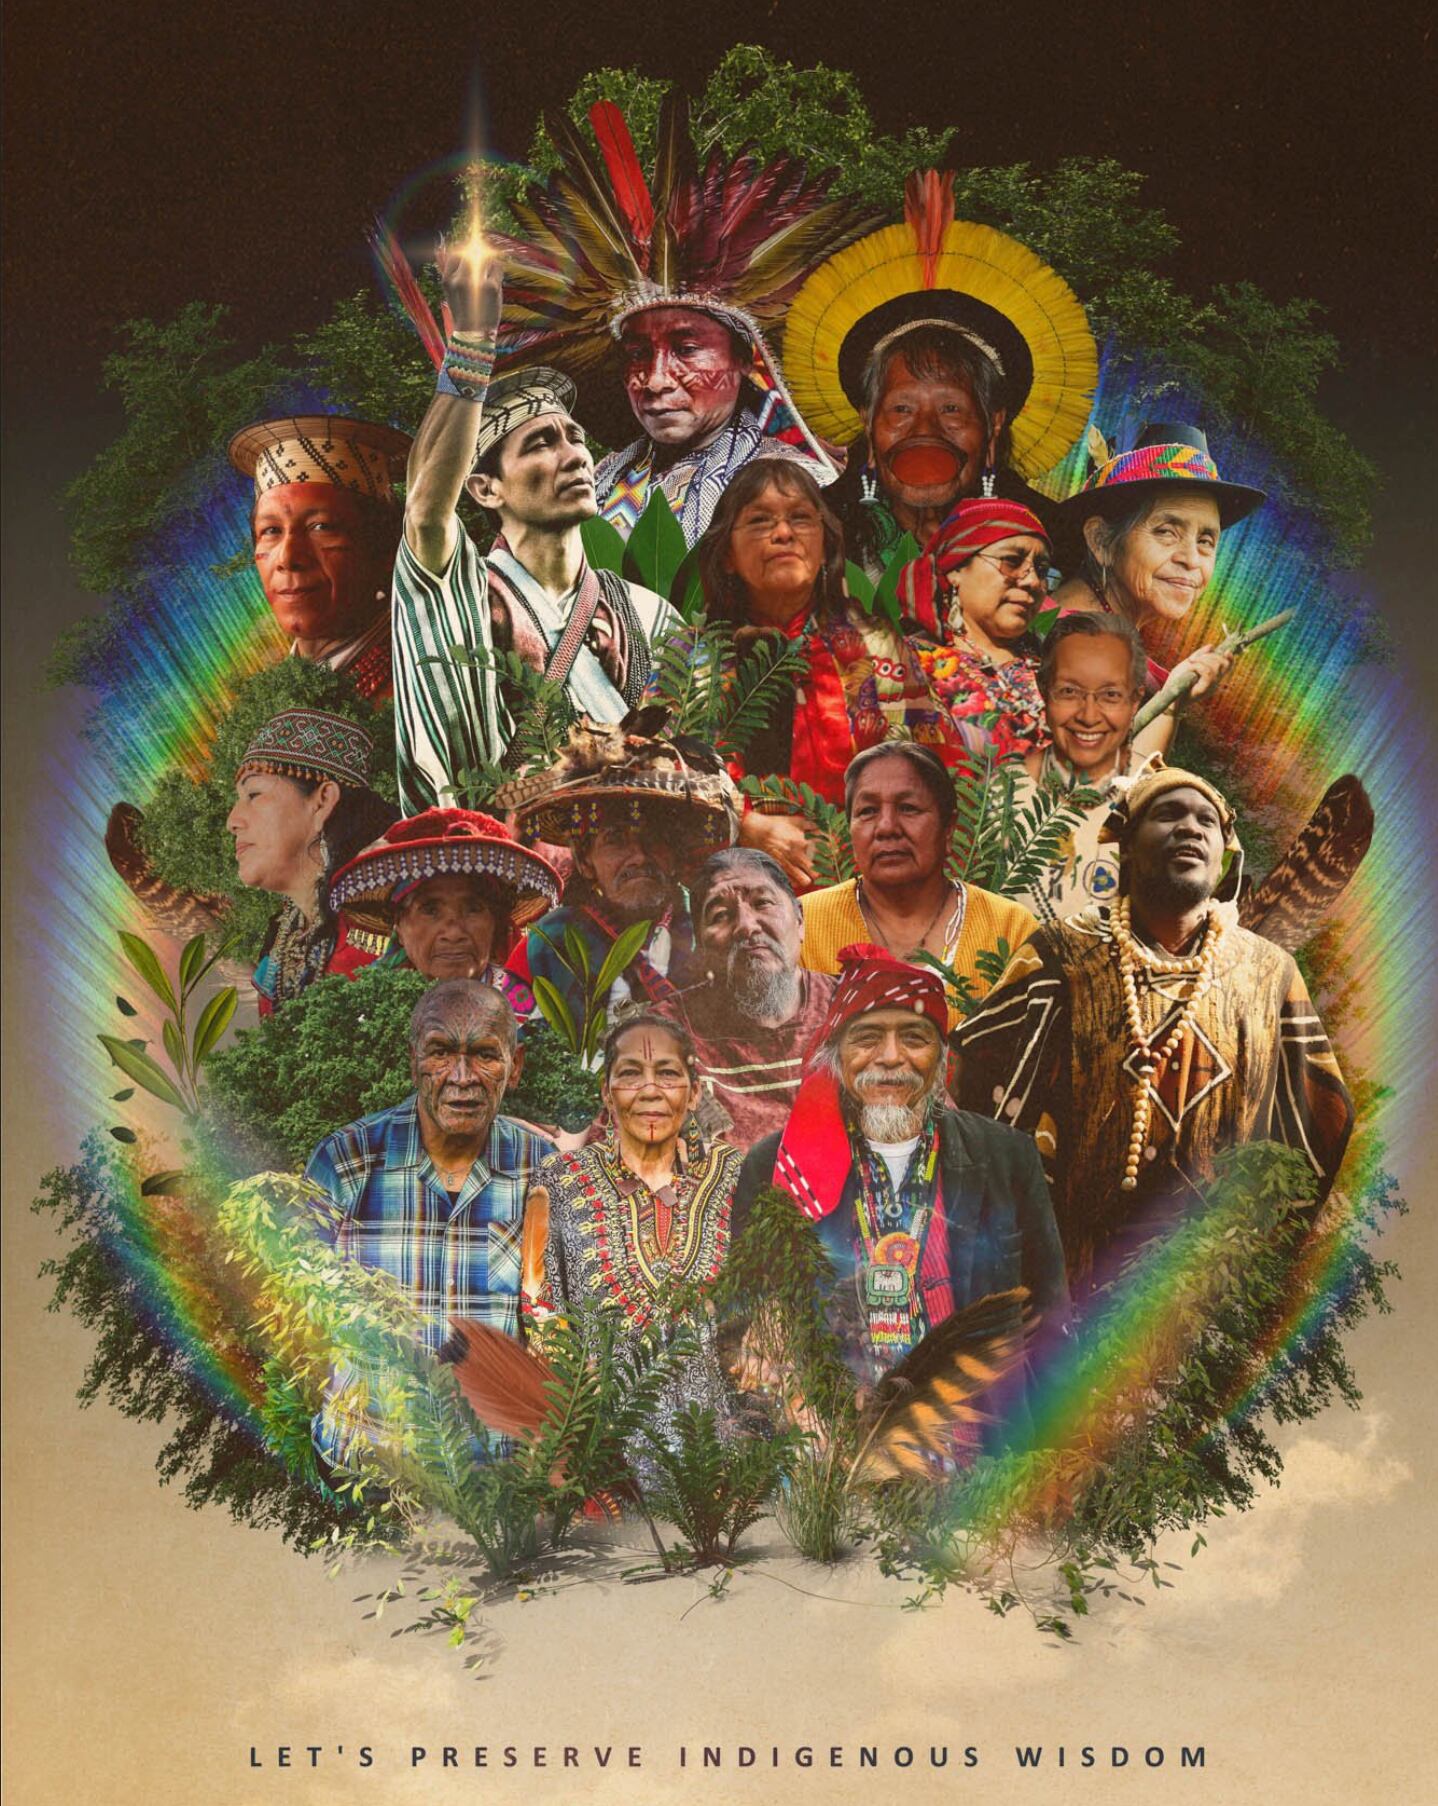 Un grupo de personas indígenas encerrado en un arcoiris acompaña la leyenda "preservemos la sabiduría indígena", obra de Carolina Niño Buro, Indigenous Wisdom, para Ancient Future, en Miami Art Week